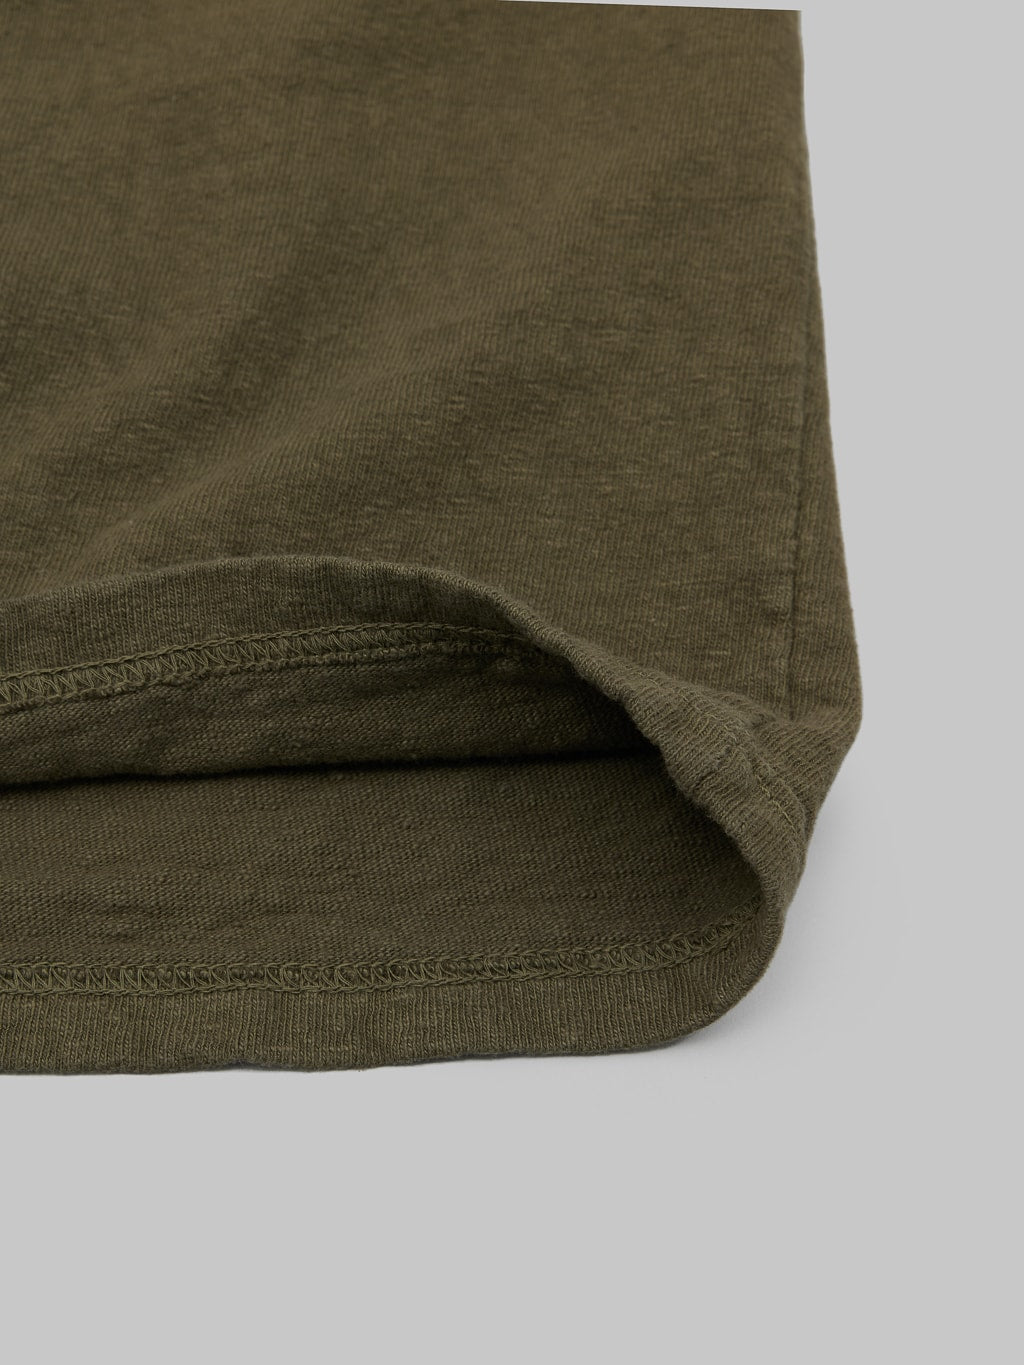 UES No 8 Slub Nep Short Sleeve Tshirt Olive fabric interior